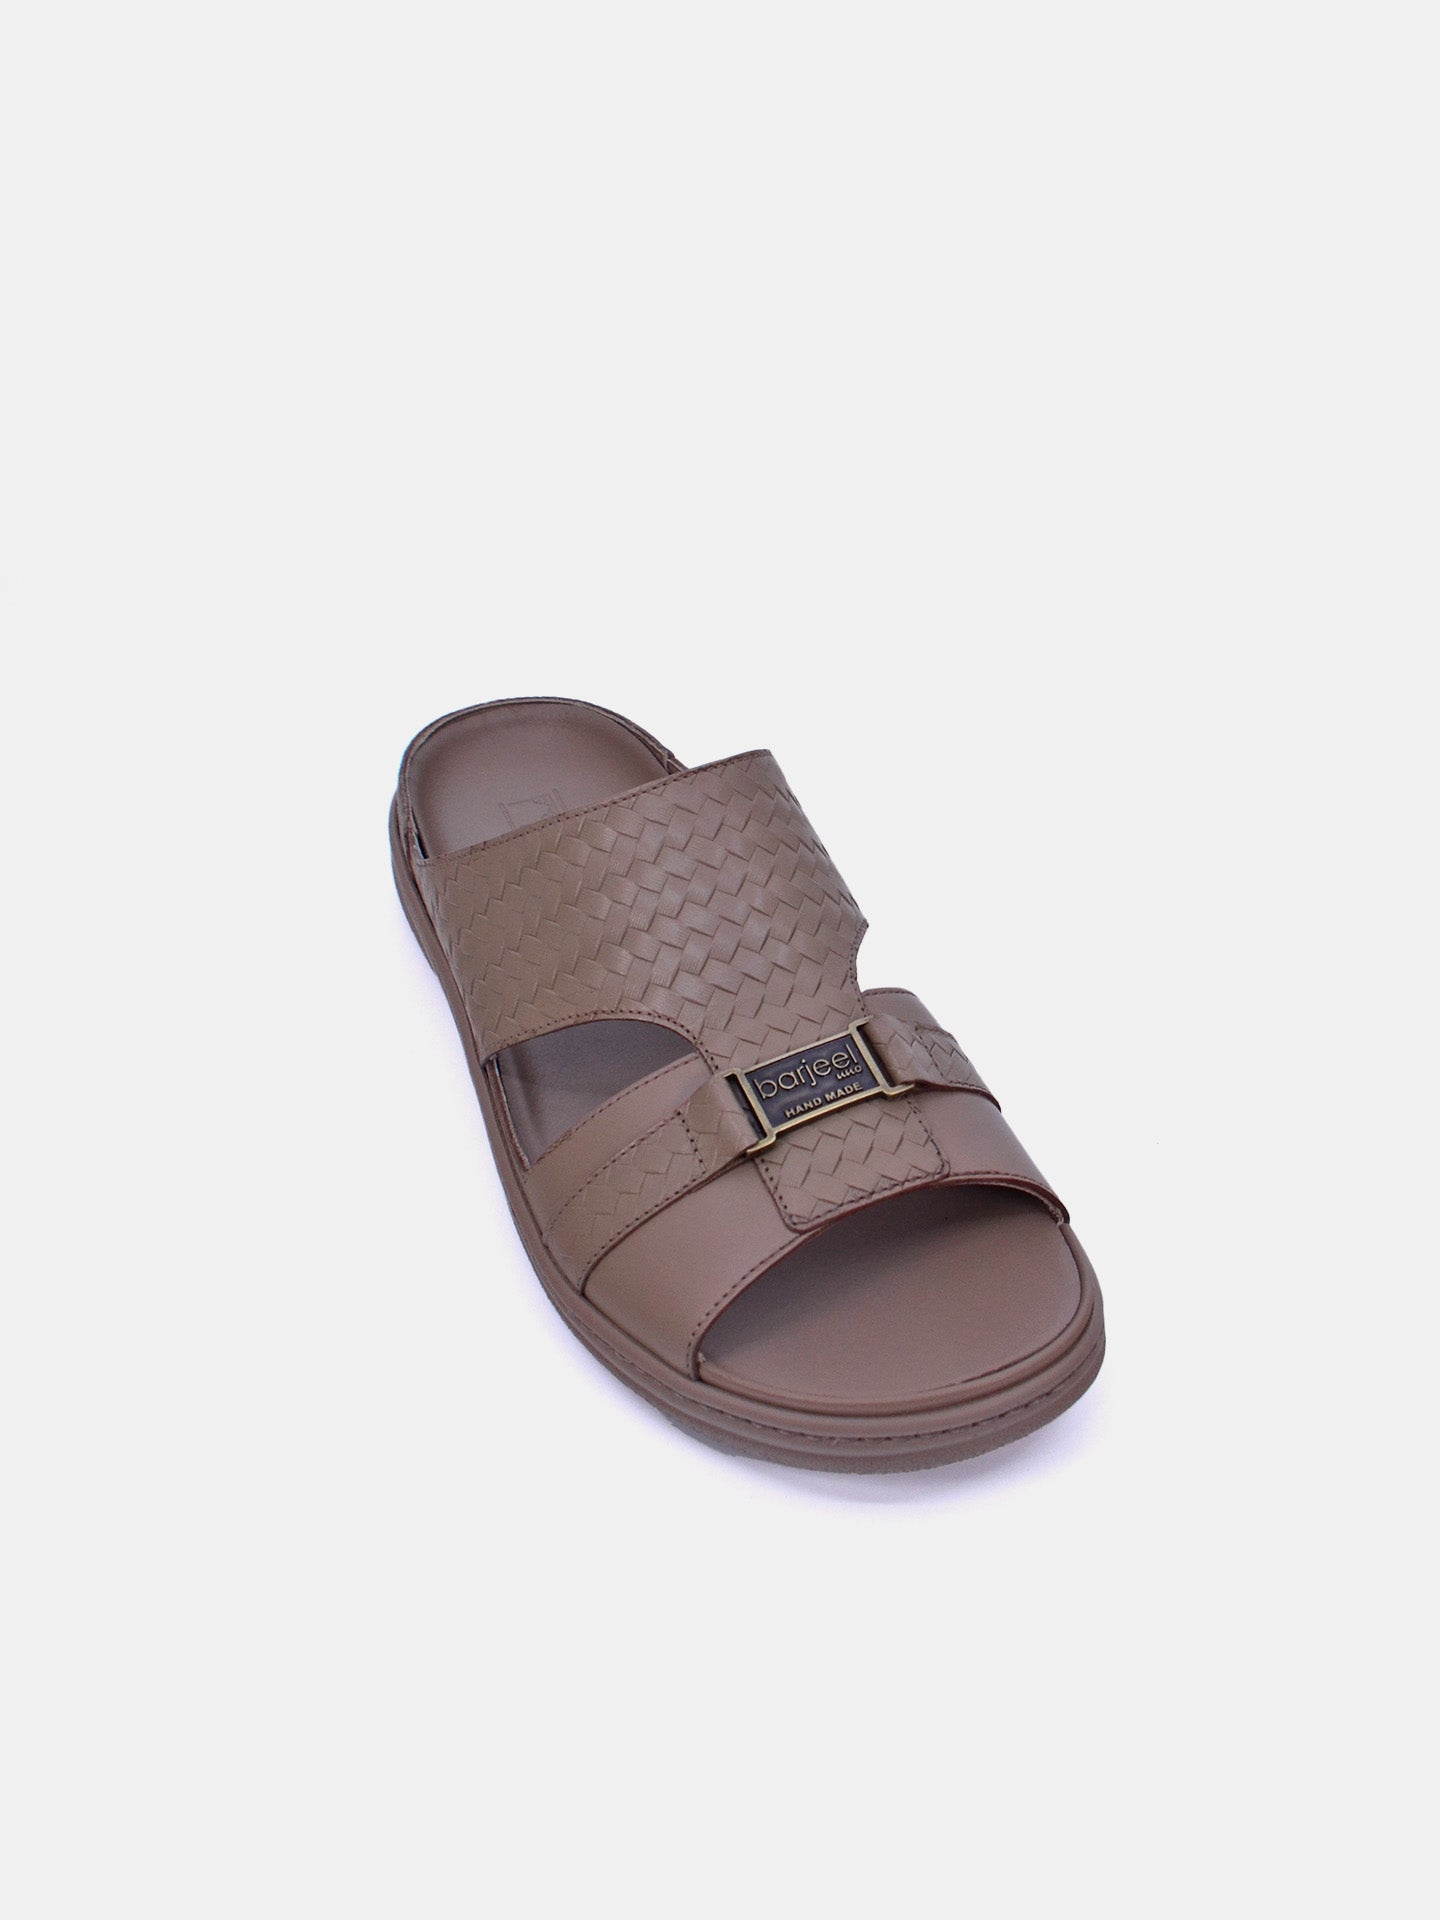 Barjeel Uno 2372 Men's Arabic Sandals #color_Beige